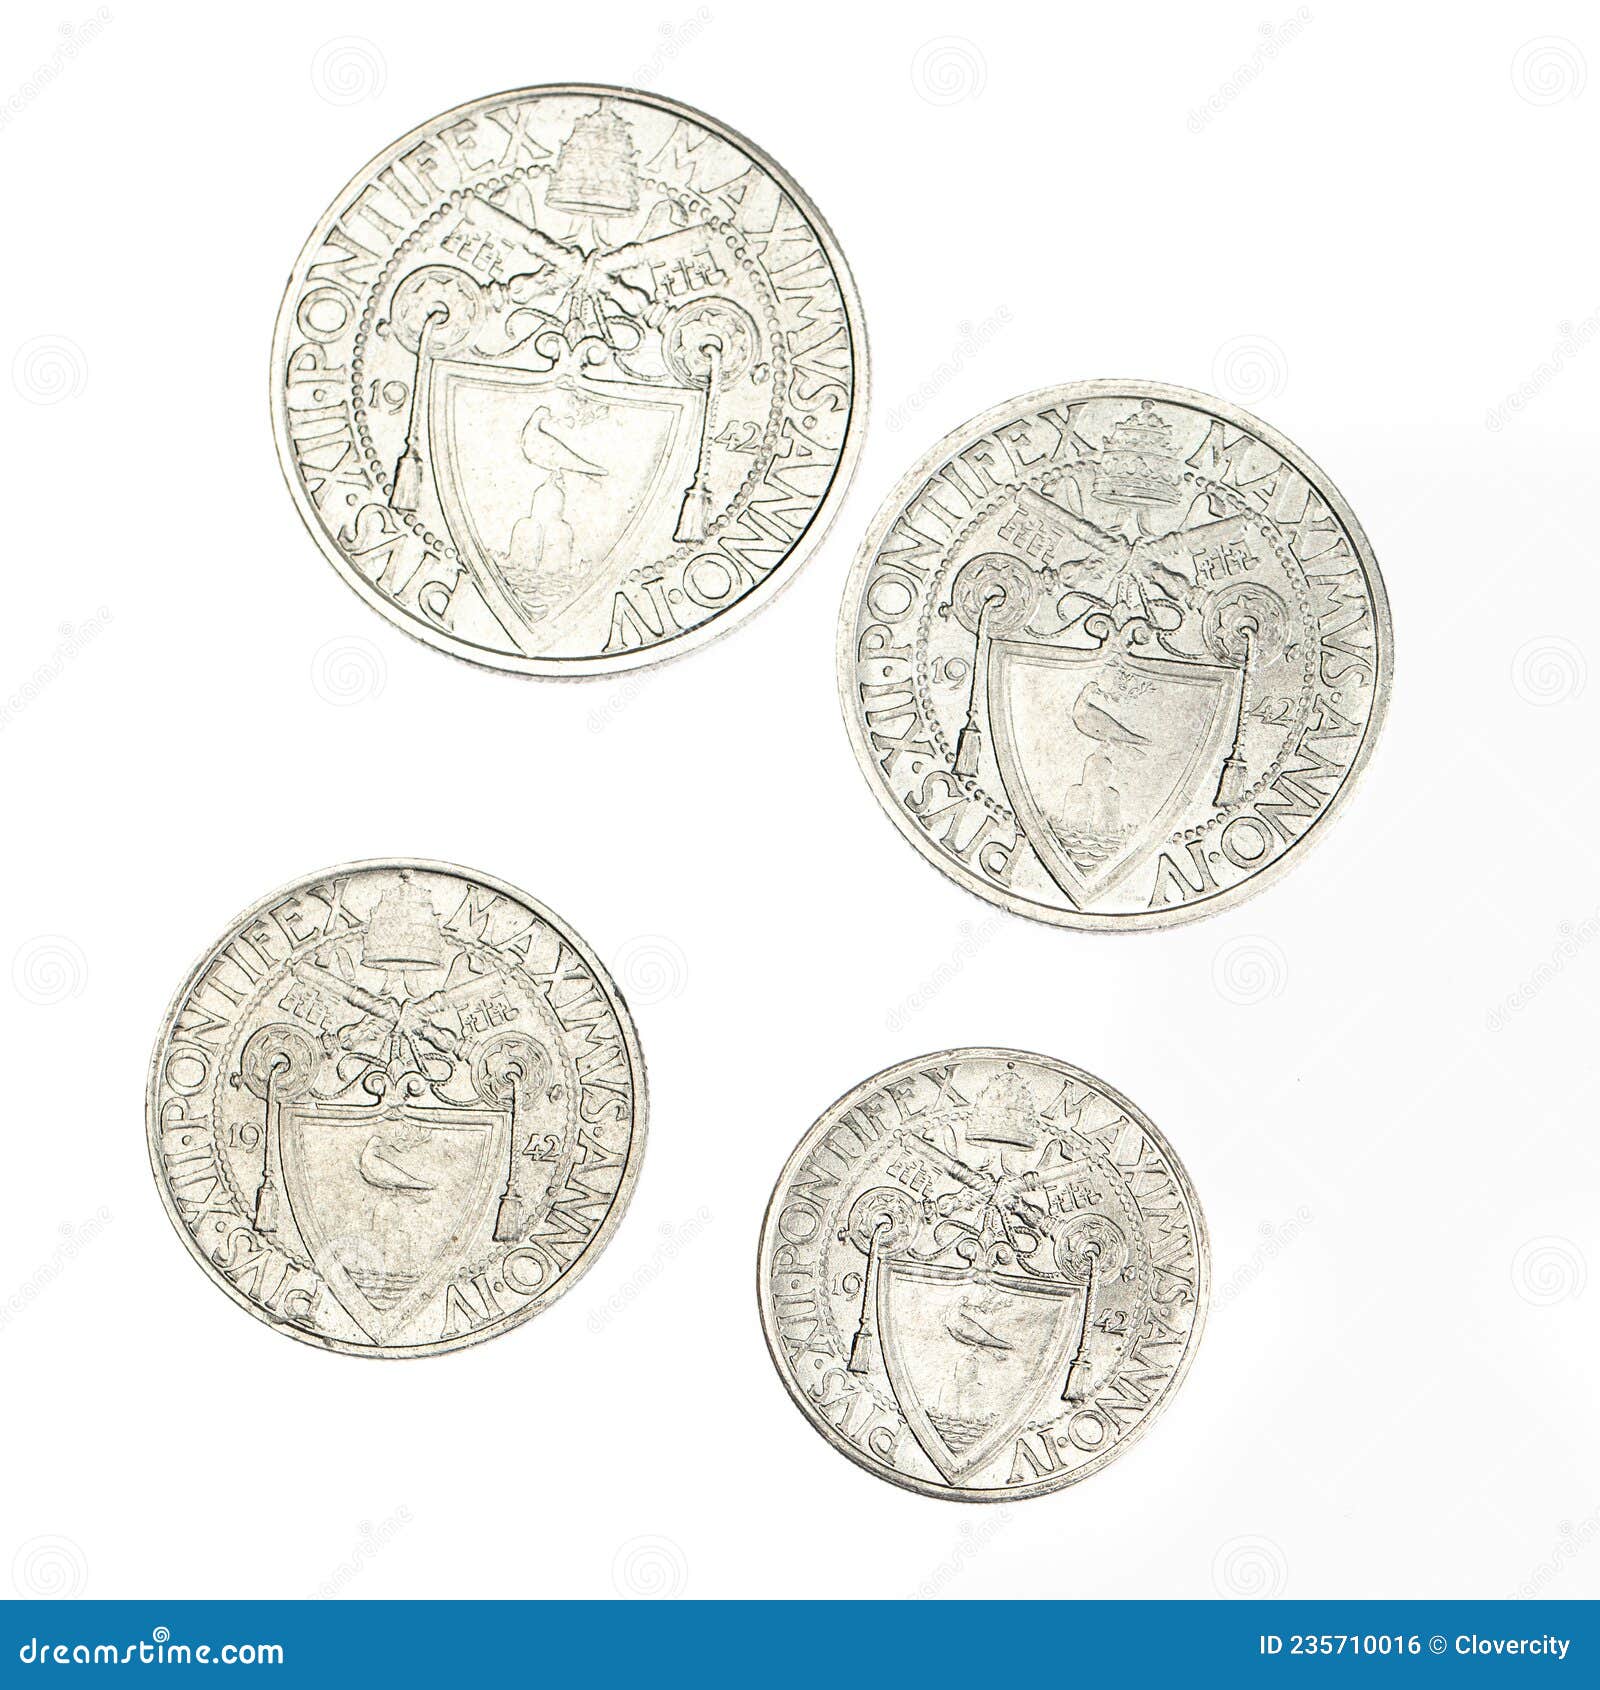 four vintage 1942 vatican city steel coins